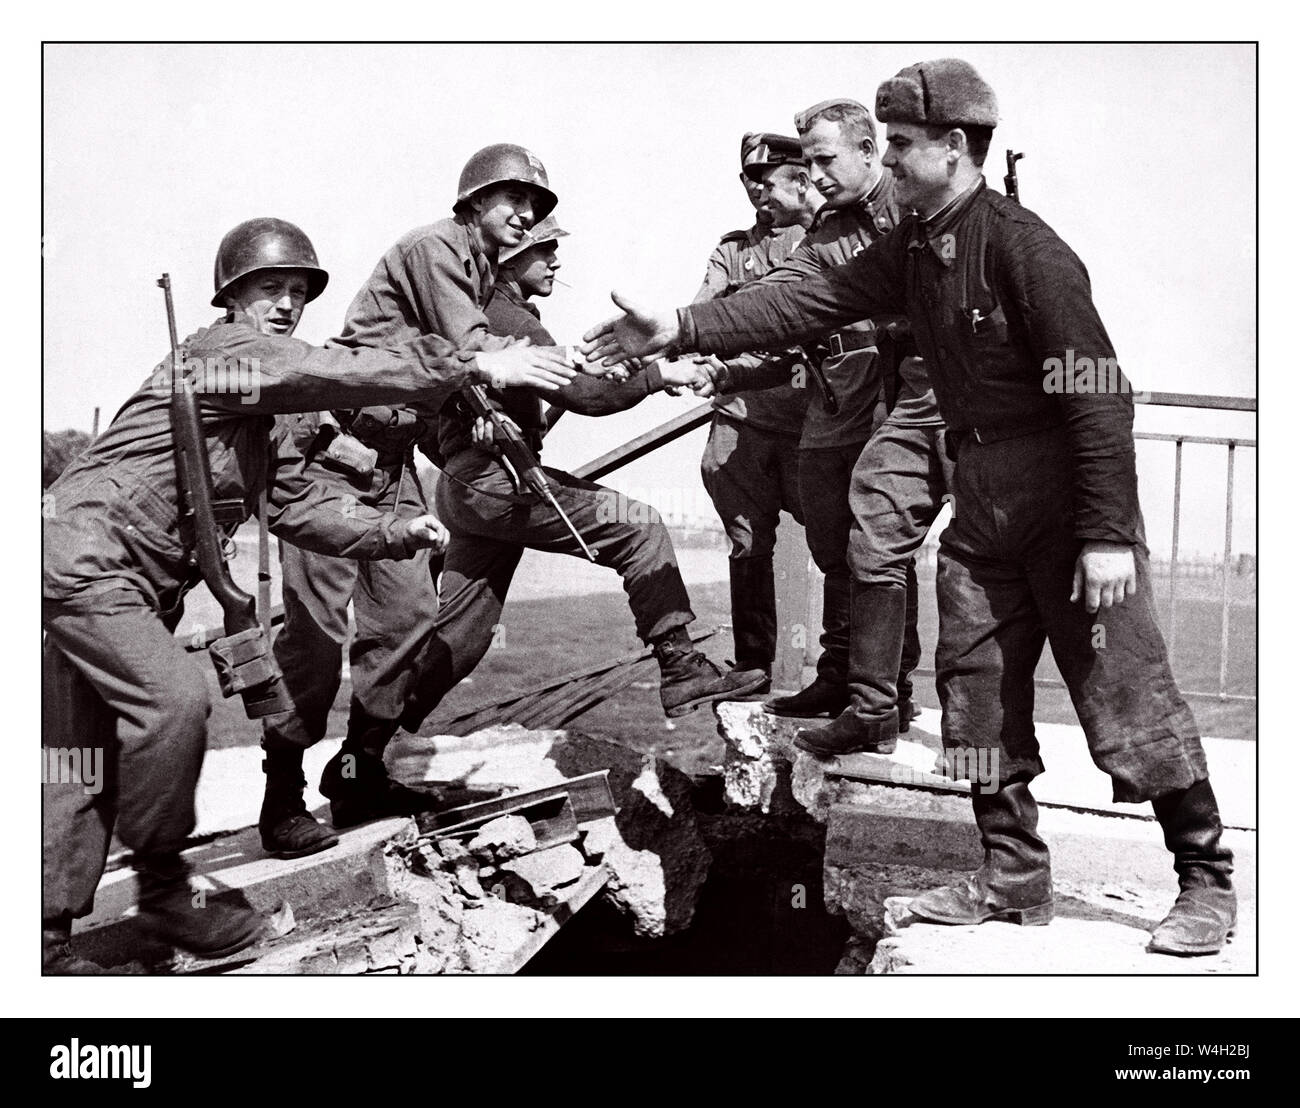 TORGAU Est rencontre l'Ouest WW2 image de troupes américaines et soviétiques sur l'pont sur l'Elbe à Torgau, le 26 avril 1945. La fameuse "prise de Torgau" photographie qui a accordé la réunion de l'ouest, près de la fin de la Seconde Guerre mondiale U S Première traversée de l'Armée endommagé pont sur l'Elbe Torgau en Saxe Allemagne photo de l'Armée américaine Banque D'Images